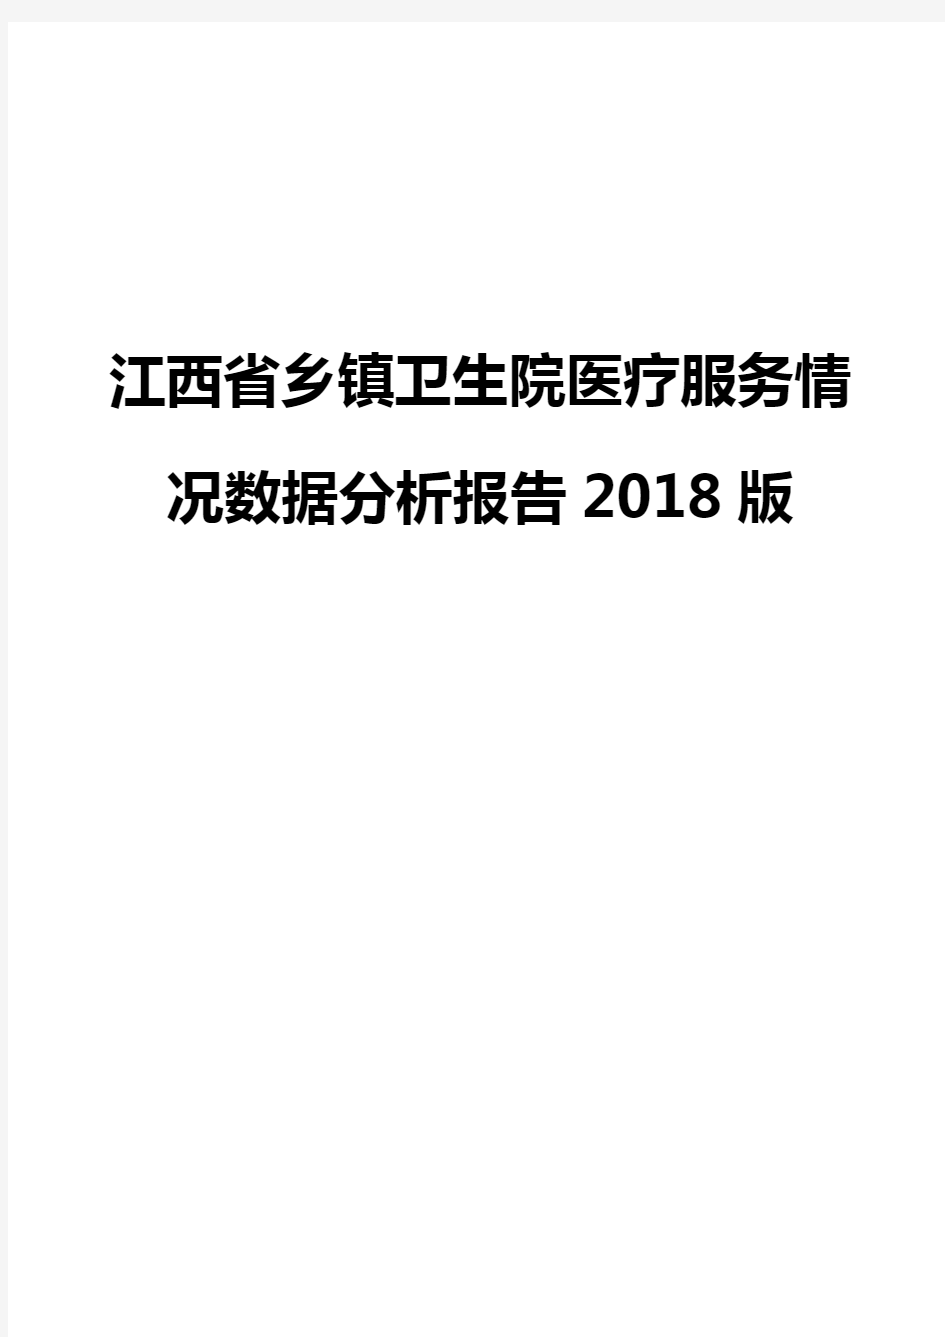 江西省乡镇卫生院医疗服务情况数据分析报告2018版